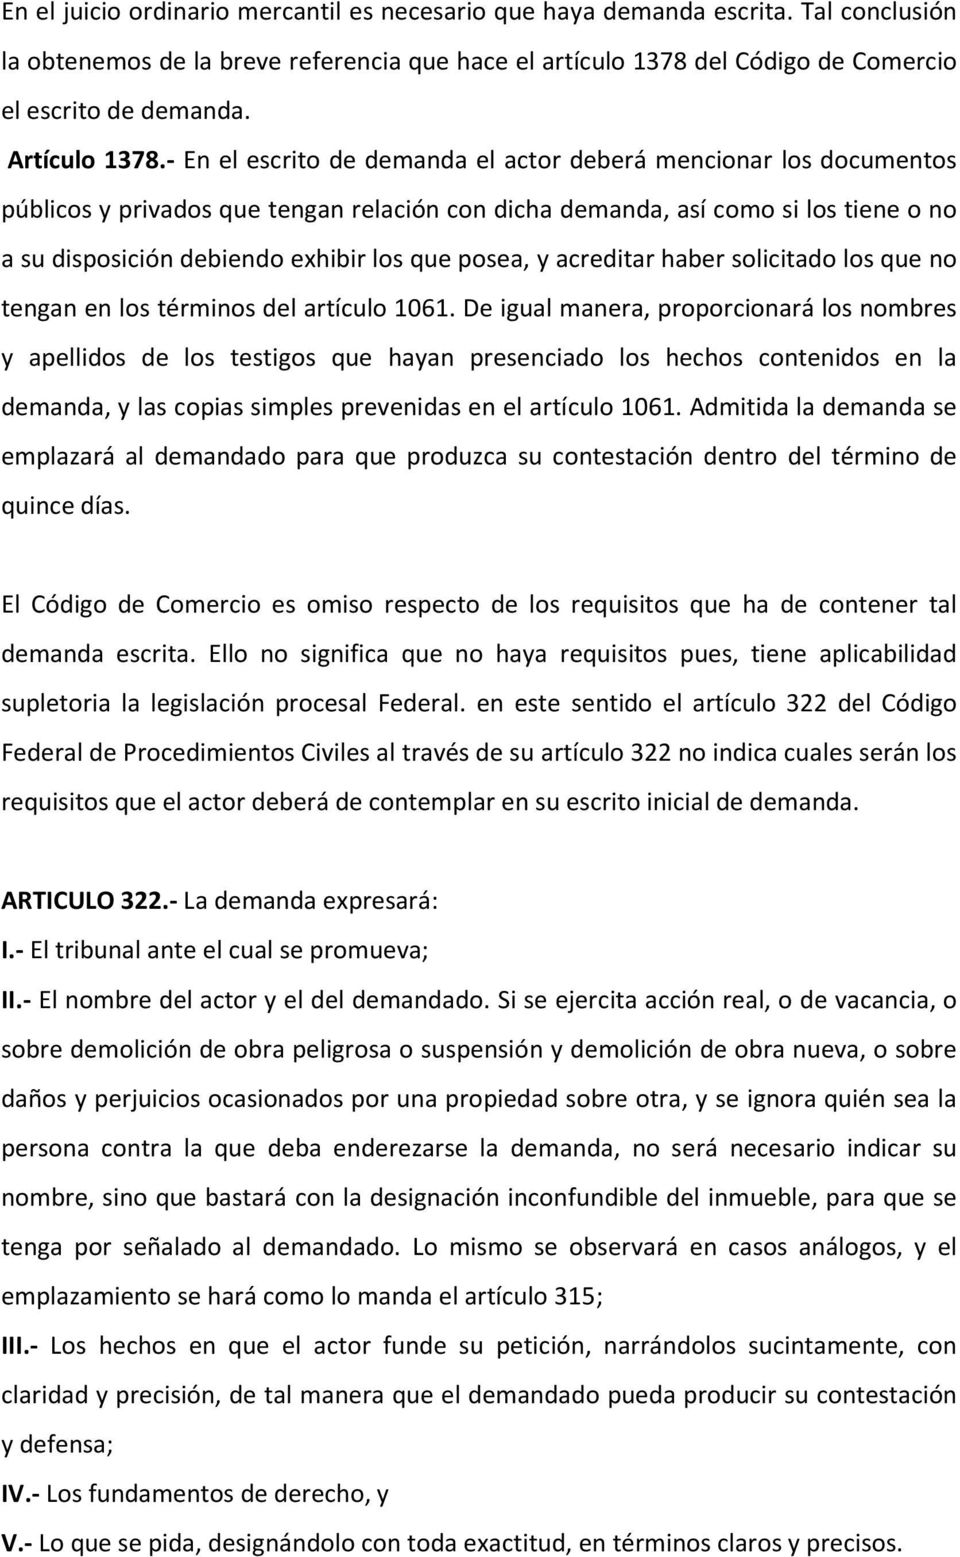 TEMA 3 EL JUICIO ORDINARIO MERCANTIL - PDF Descargar libre